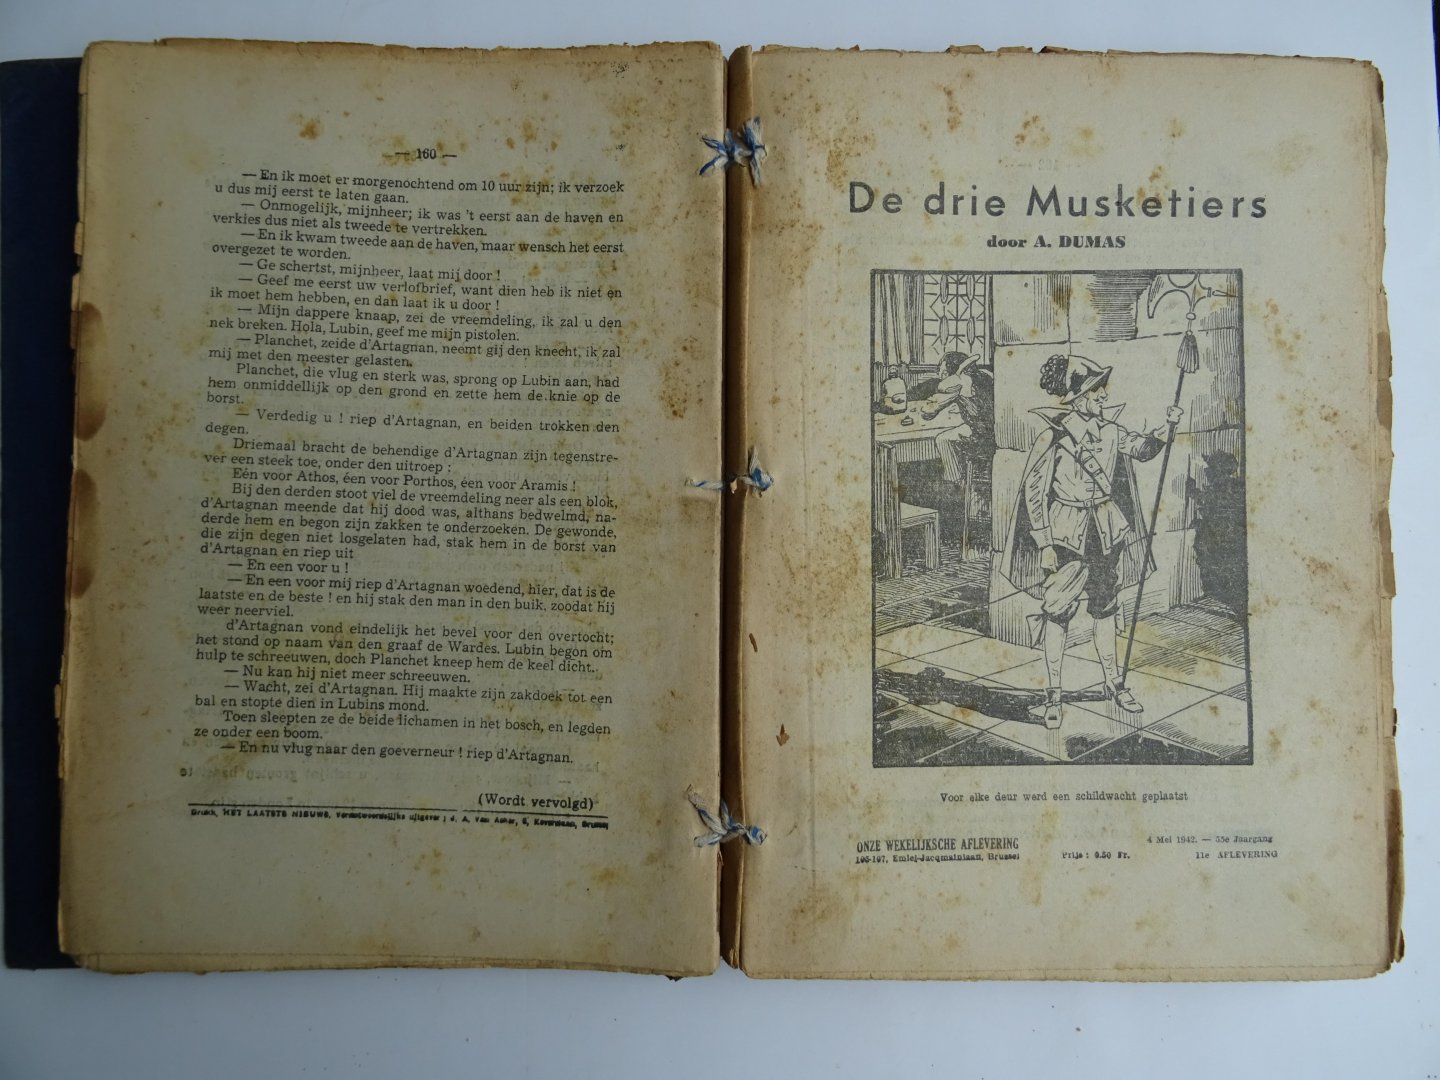 Dumas, A. - De  drie Musketiers, onze wekelijksche aflevering, Het Laatste Nieuws.